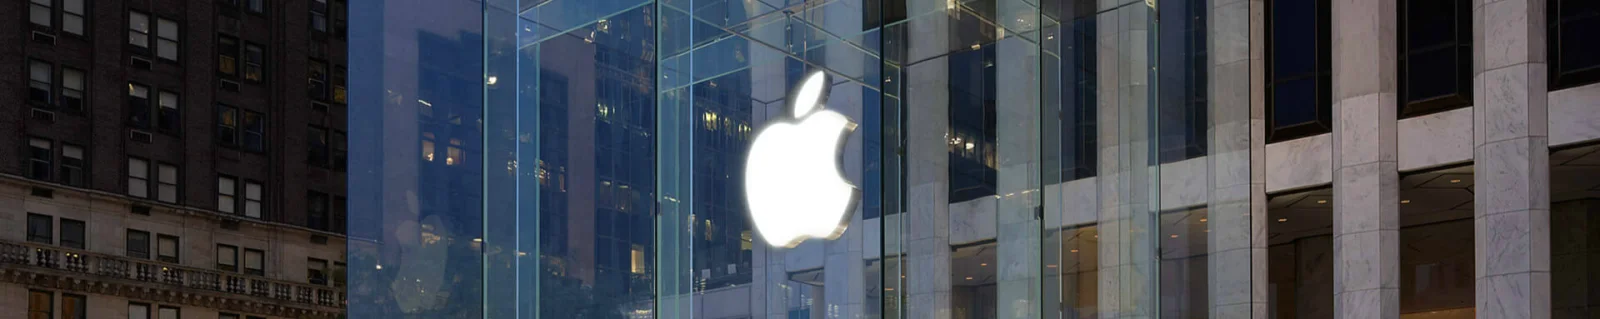 苹果正式成为历史上第一家市值突破一万亿美元的科技公司